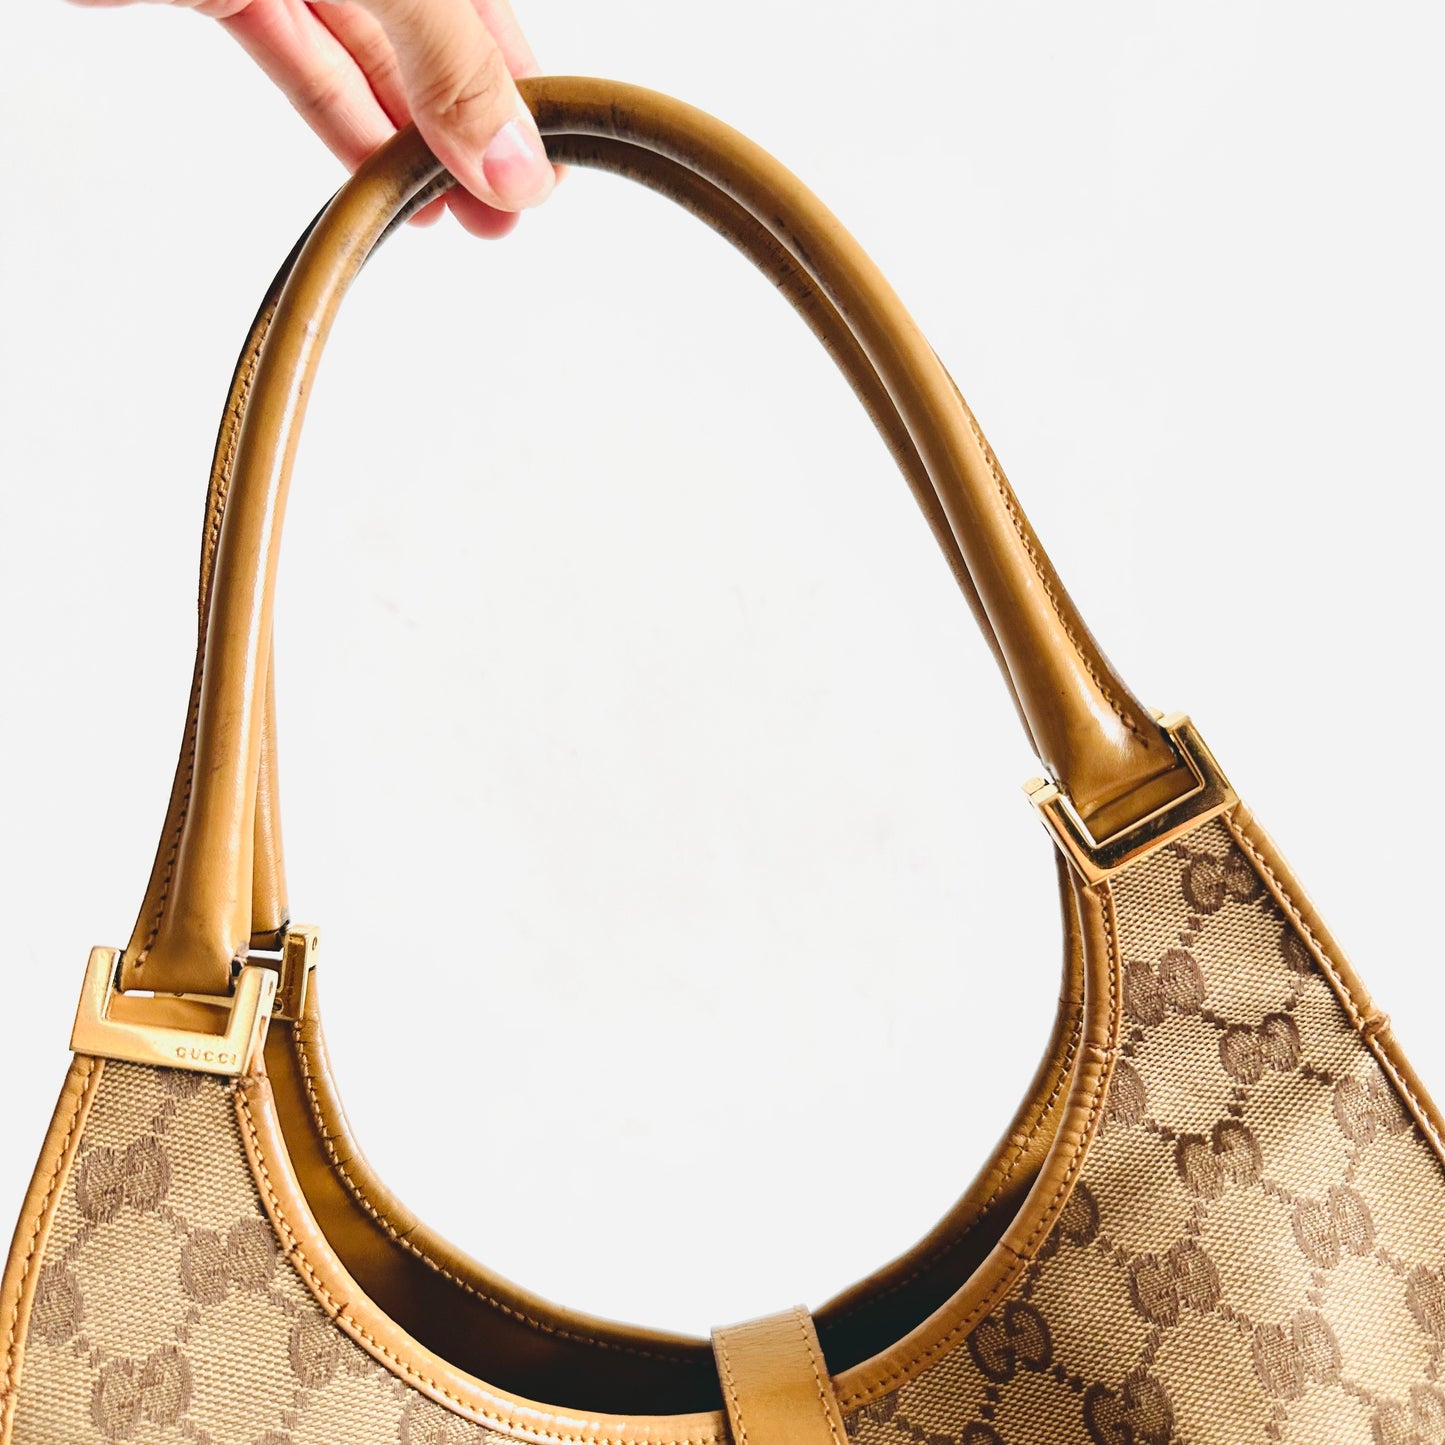 Gucci Beige / Caramel Brown GHW Jackie GG Monogram Logo Baguette Hobo Shoulder Bag